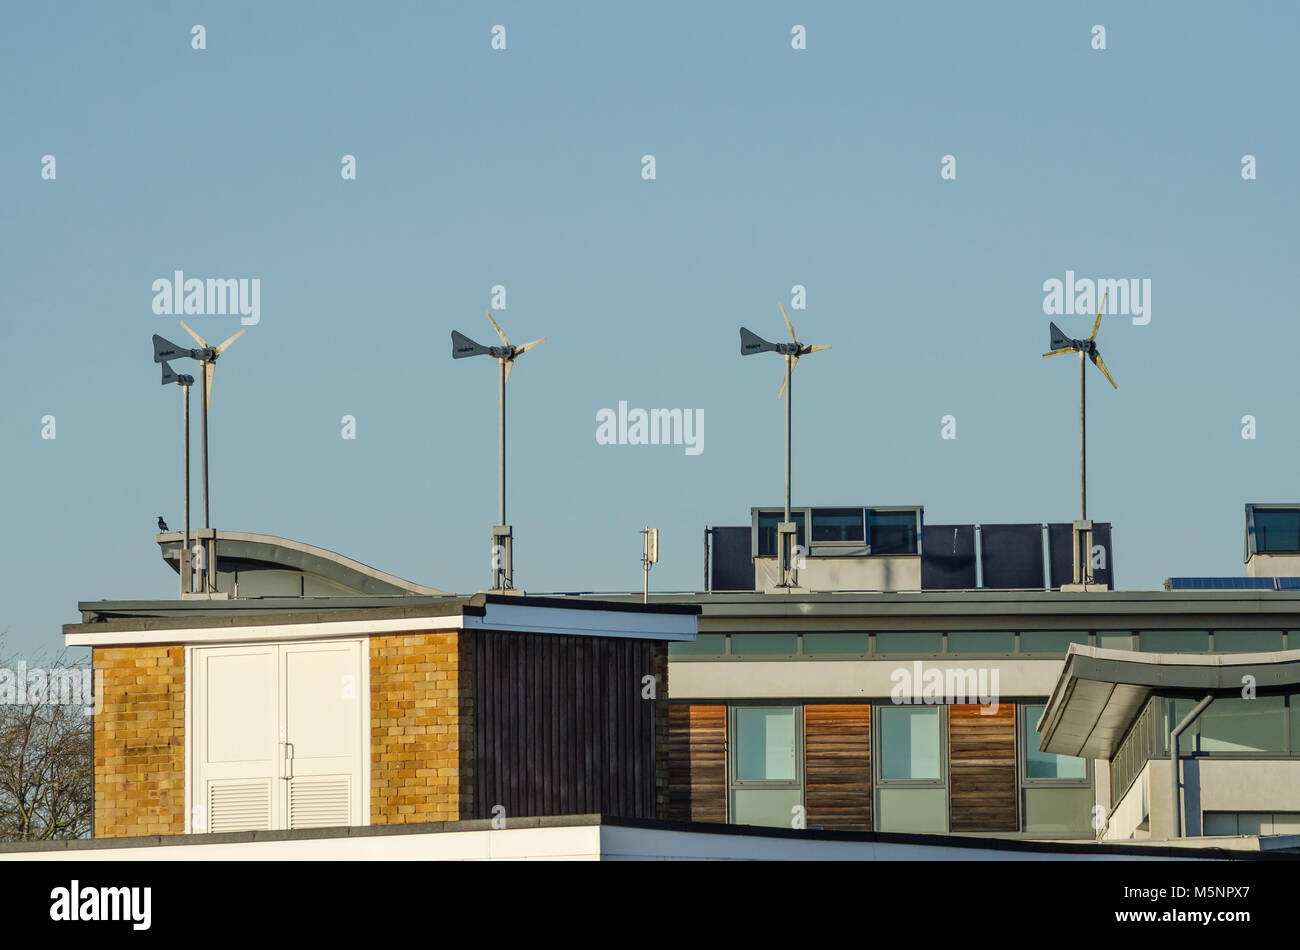 Les petites éoliennes sur le toit d'un bâtiment de produire de l'électricité pour alimenter l'immeuble. Banque D'Images